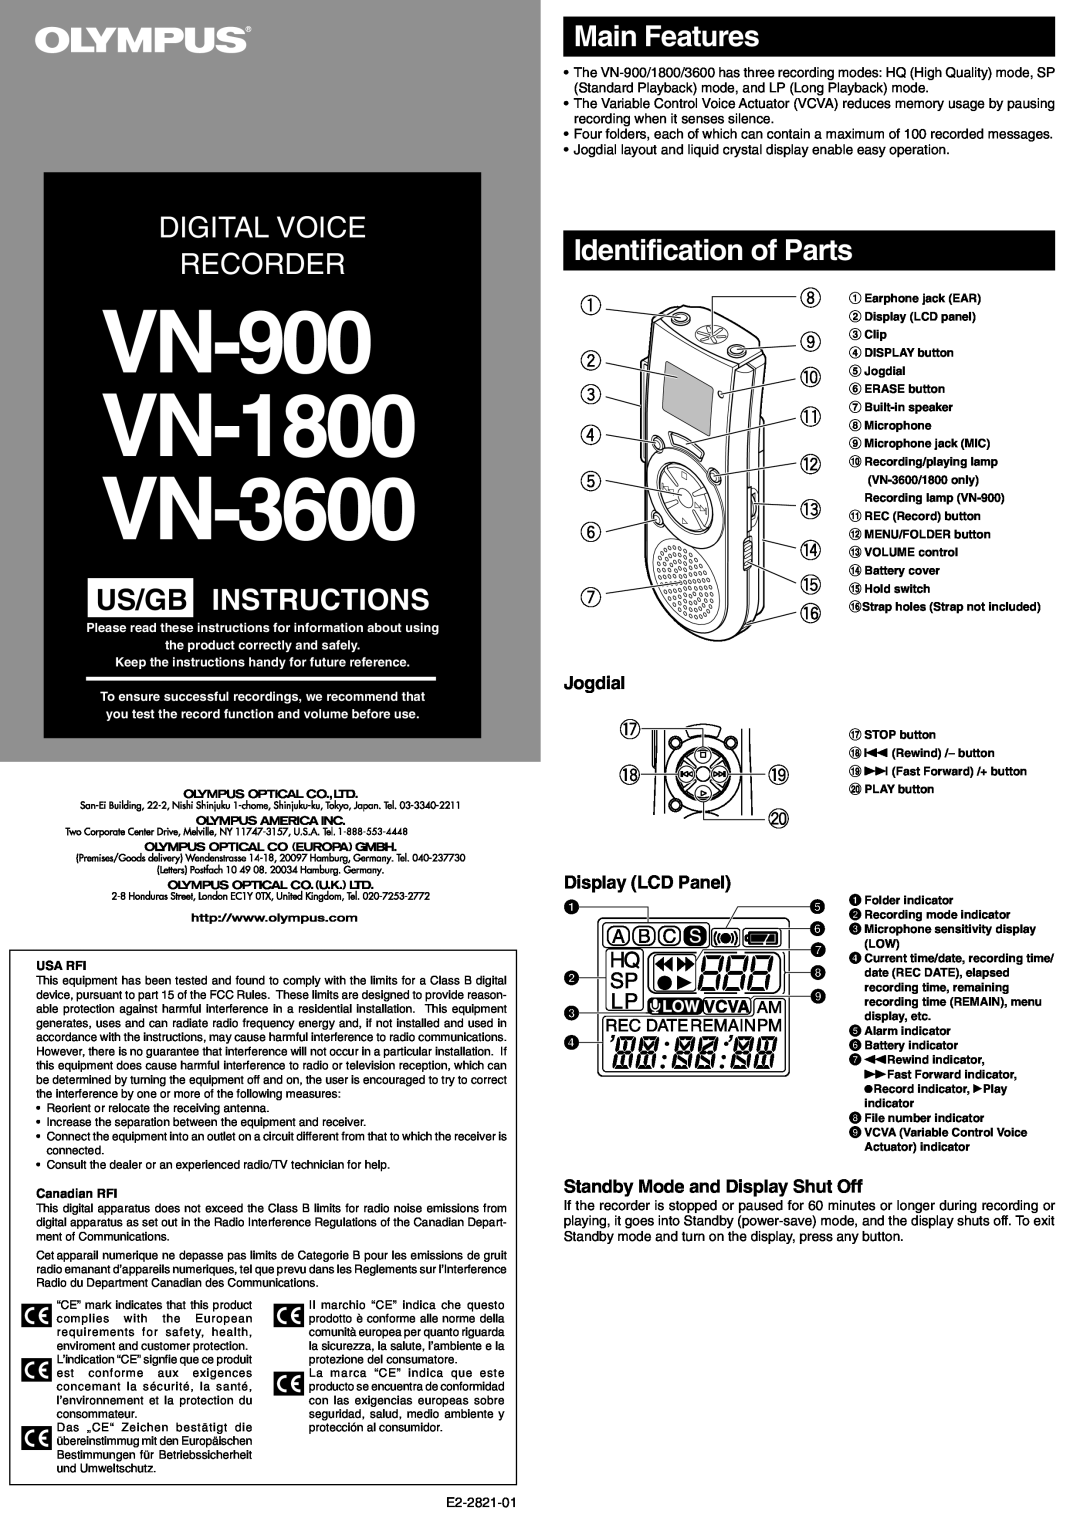 Olympus VN-3600, VN-900 manual Fr Mode D’Emploi, Caractéristiques principales, Identification des éléments, Joystick 